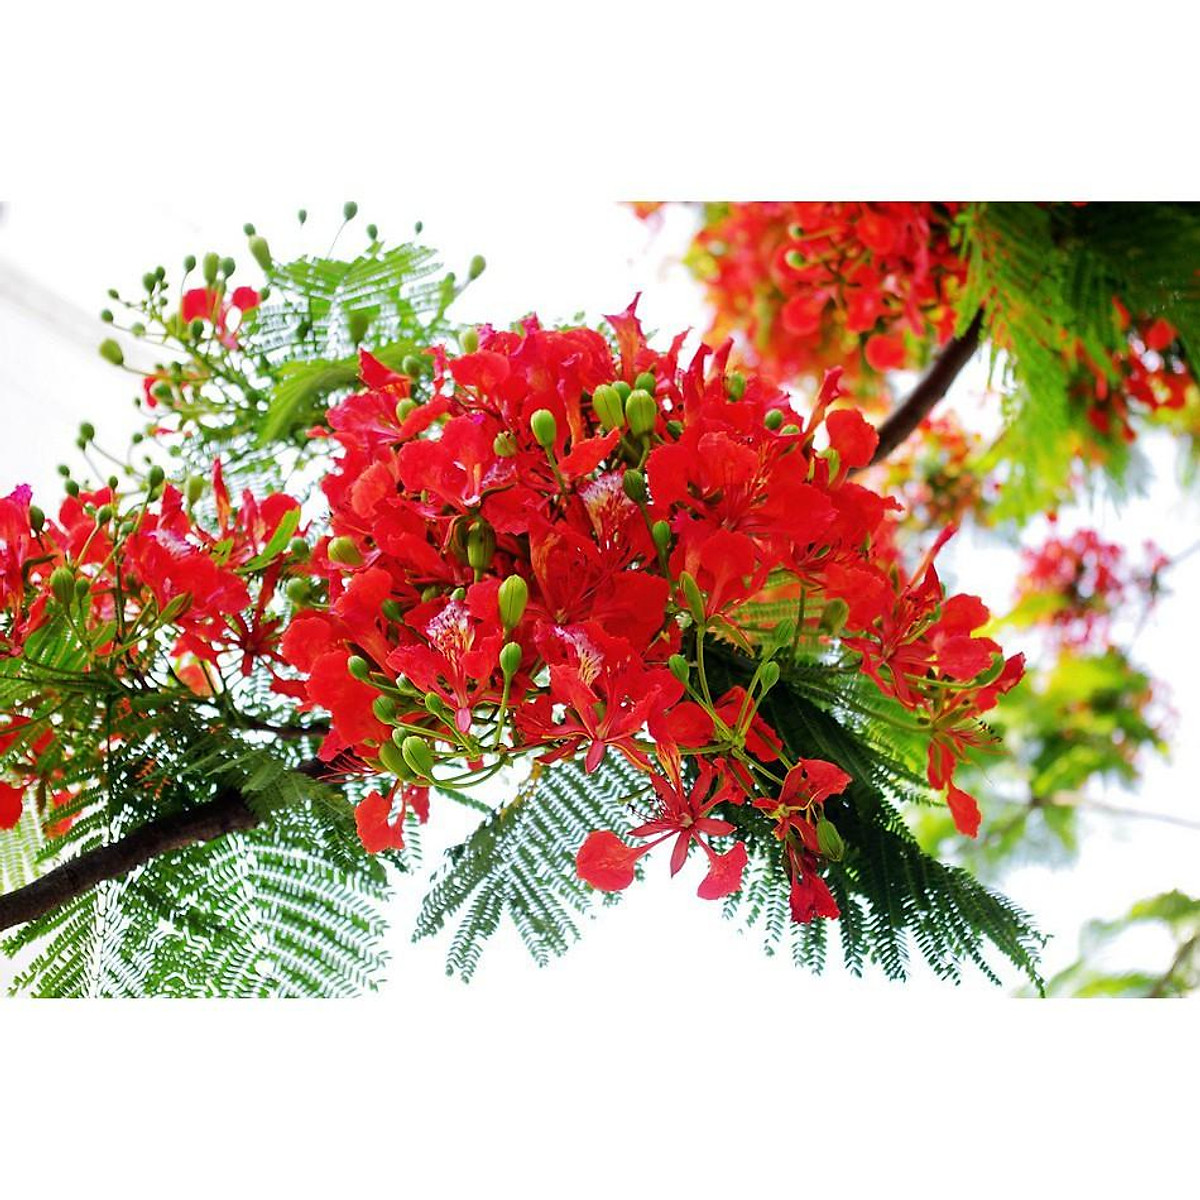 Cây hoa phượng đỏ: Cây hoa phượng đỏ mang lại một vẻ đẹp nổi bật và quý phái để làm cảnh trong sân vườn của bạn. Những cánh hoa đỏ tươi nổi bật trên nền lá màu xanh tràn đầy sức sống, khiến ai nhìn vào cũng cảm thấy yêu thích và trong trạng thái thư giãn.